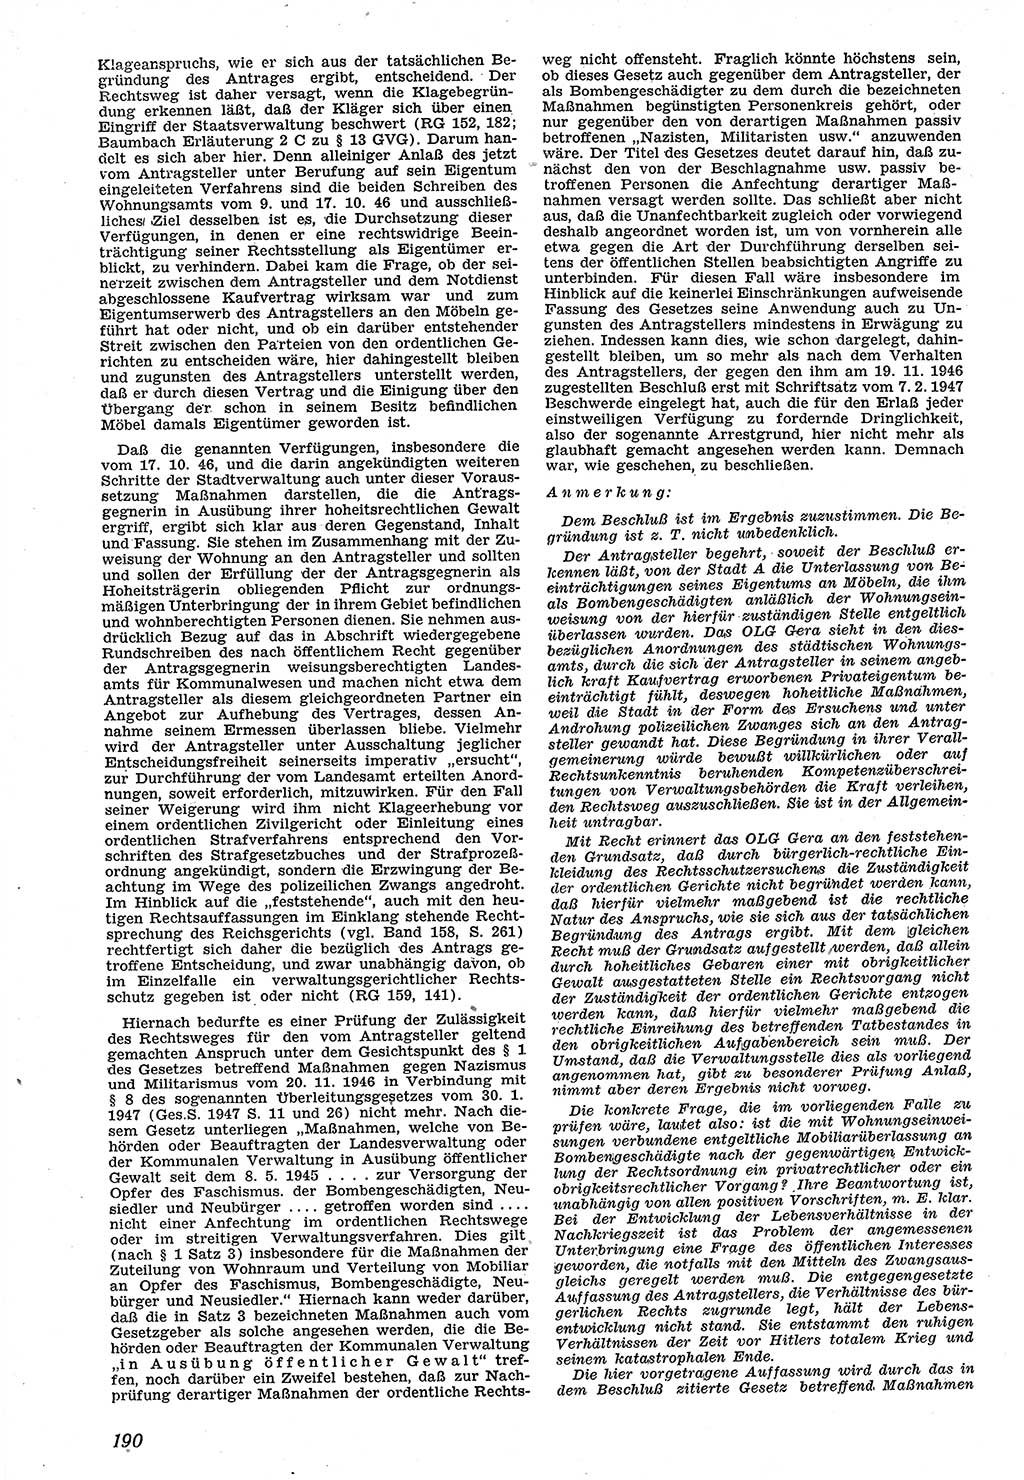 Neue Justiz (NJ), Zeitschrift für Recht und Rechtswissenschaft [Sowjetische Besatzungszone (SBZ) Deutschland], 1. Jahrgang 1947, Seite 190 (NJ SBZ Dtl. 1947, S. 190)